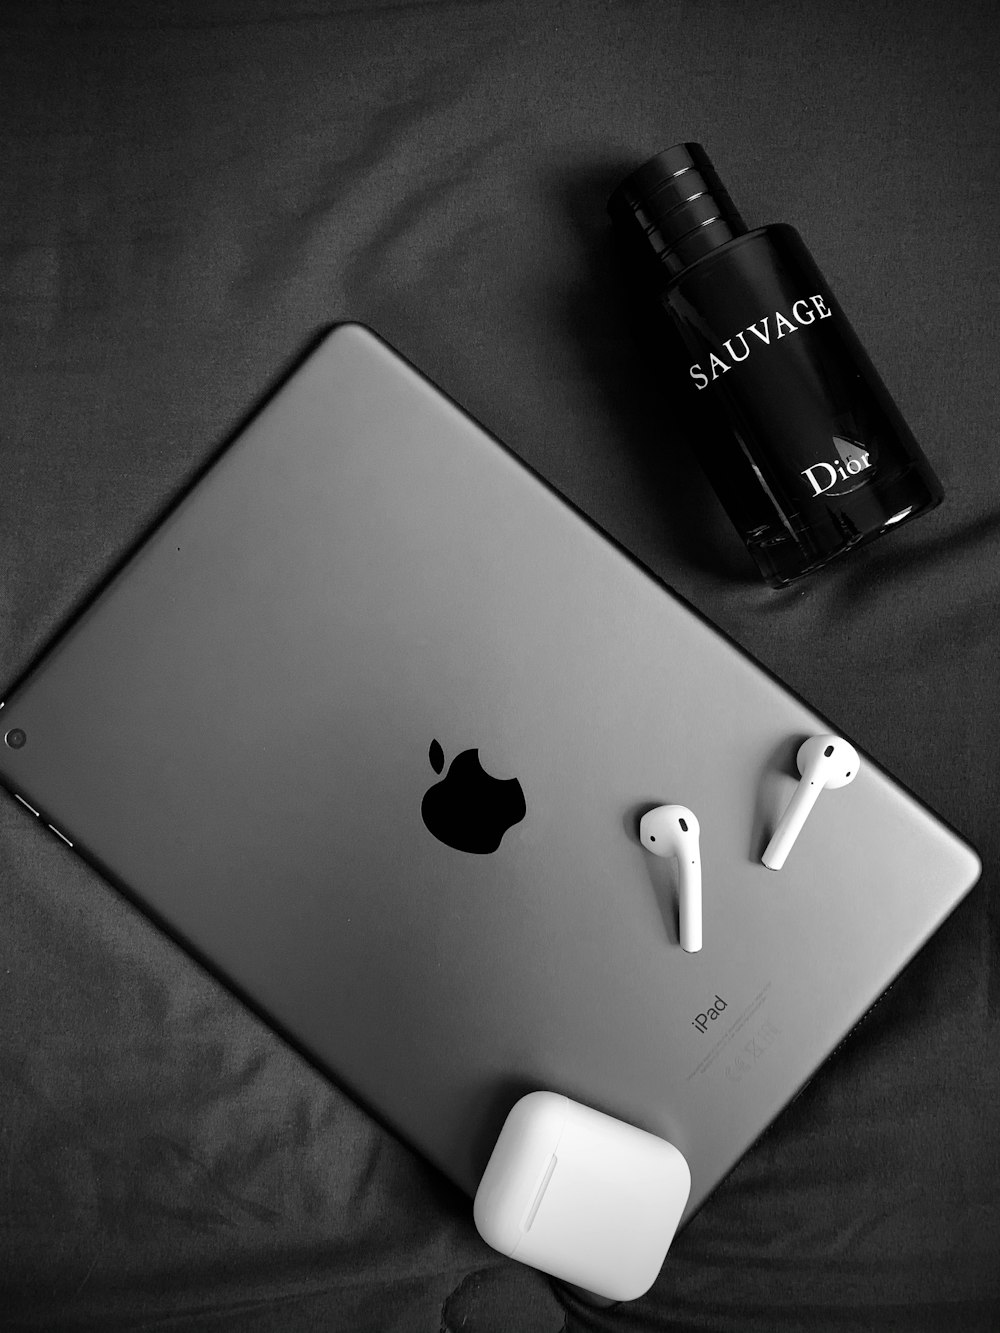 silver macbook beside black bottle